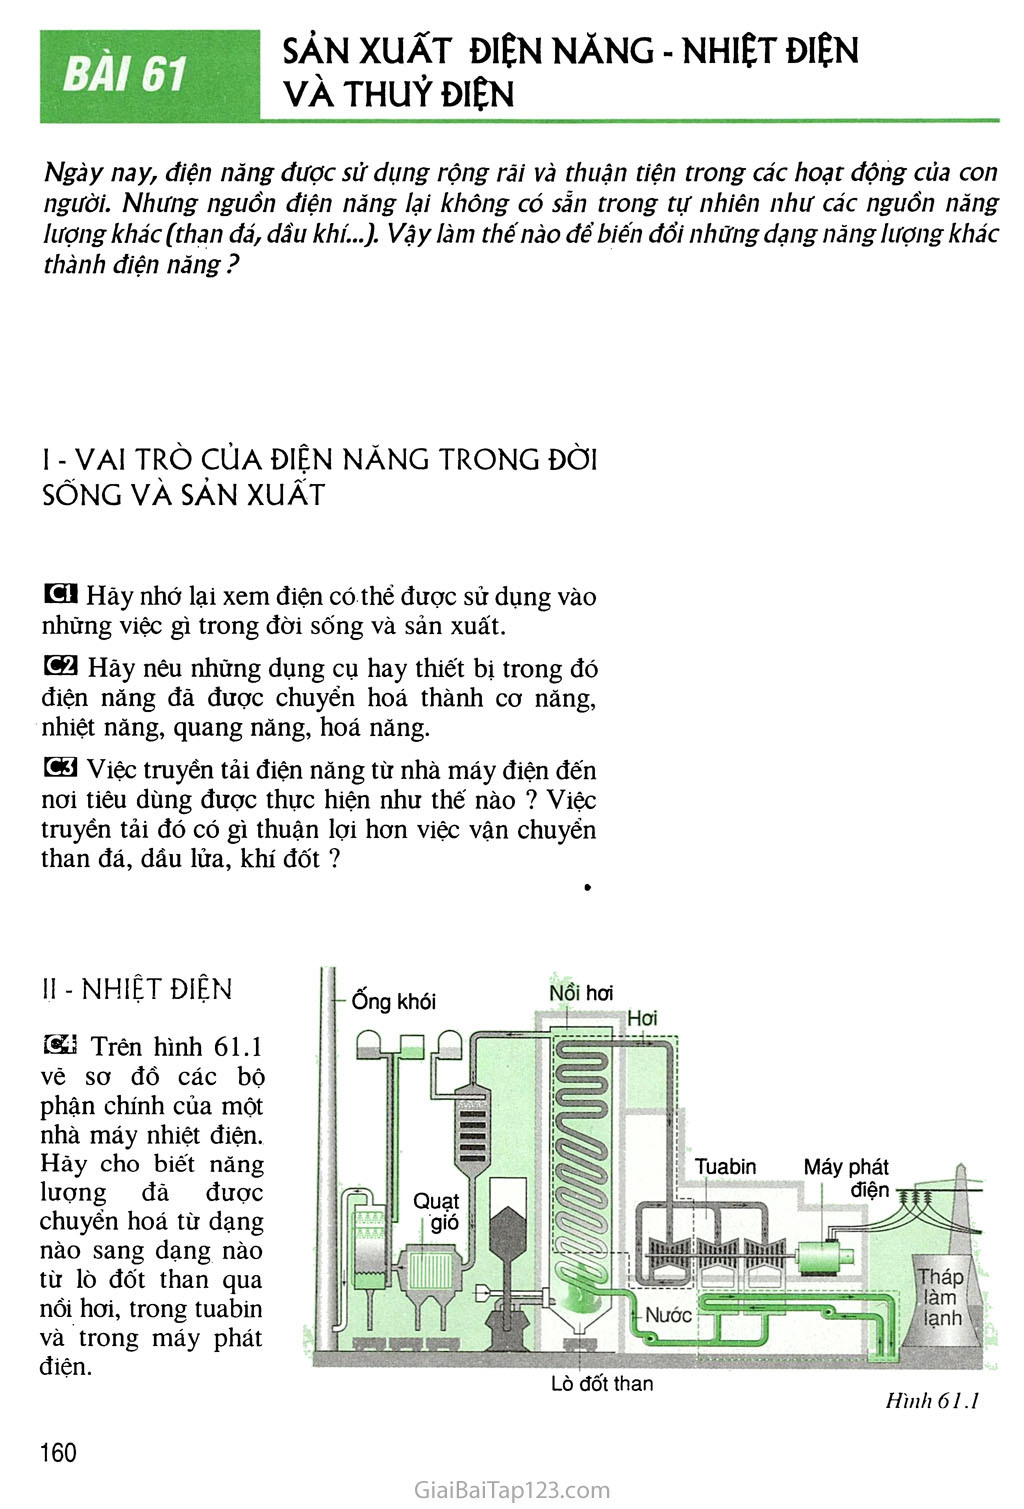 Bài 61 Sản xuất điện năng - Nhiệt điện và thuỷ điện trang 1